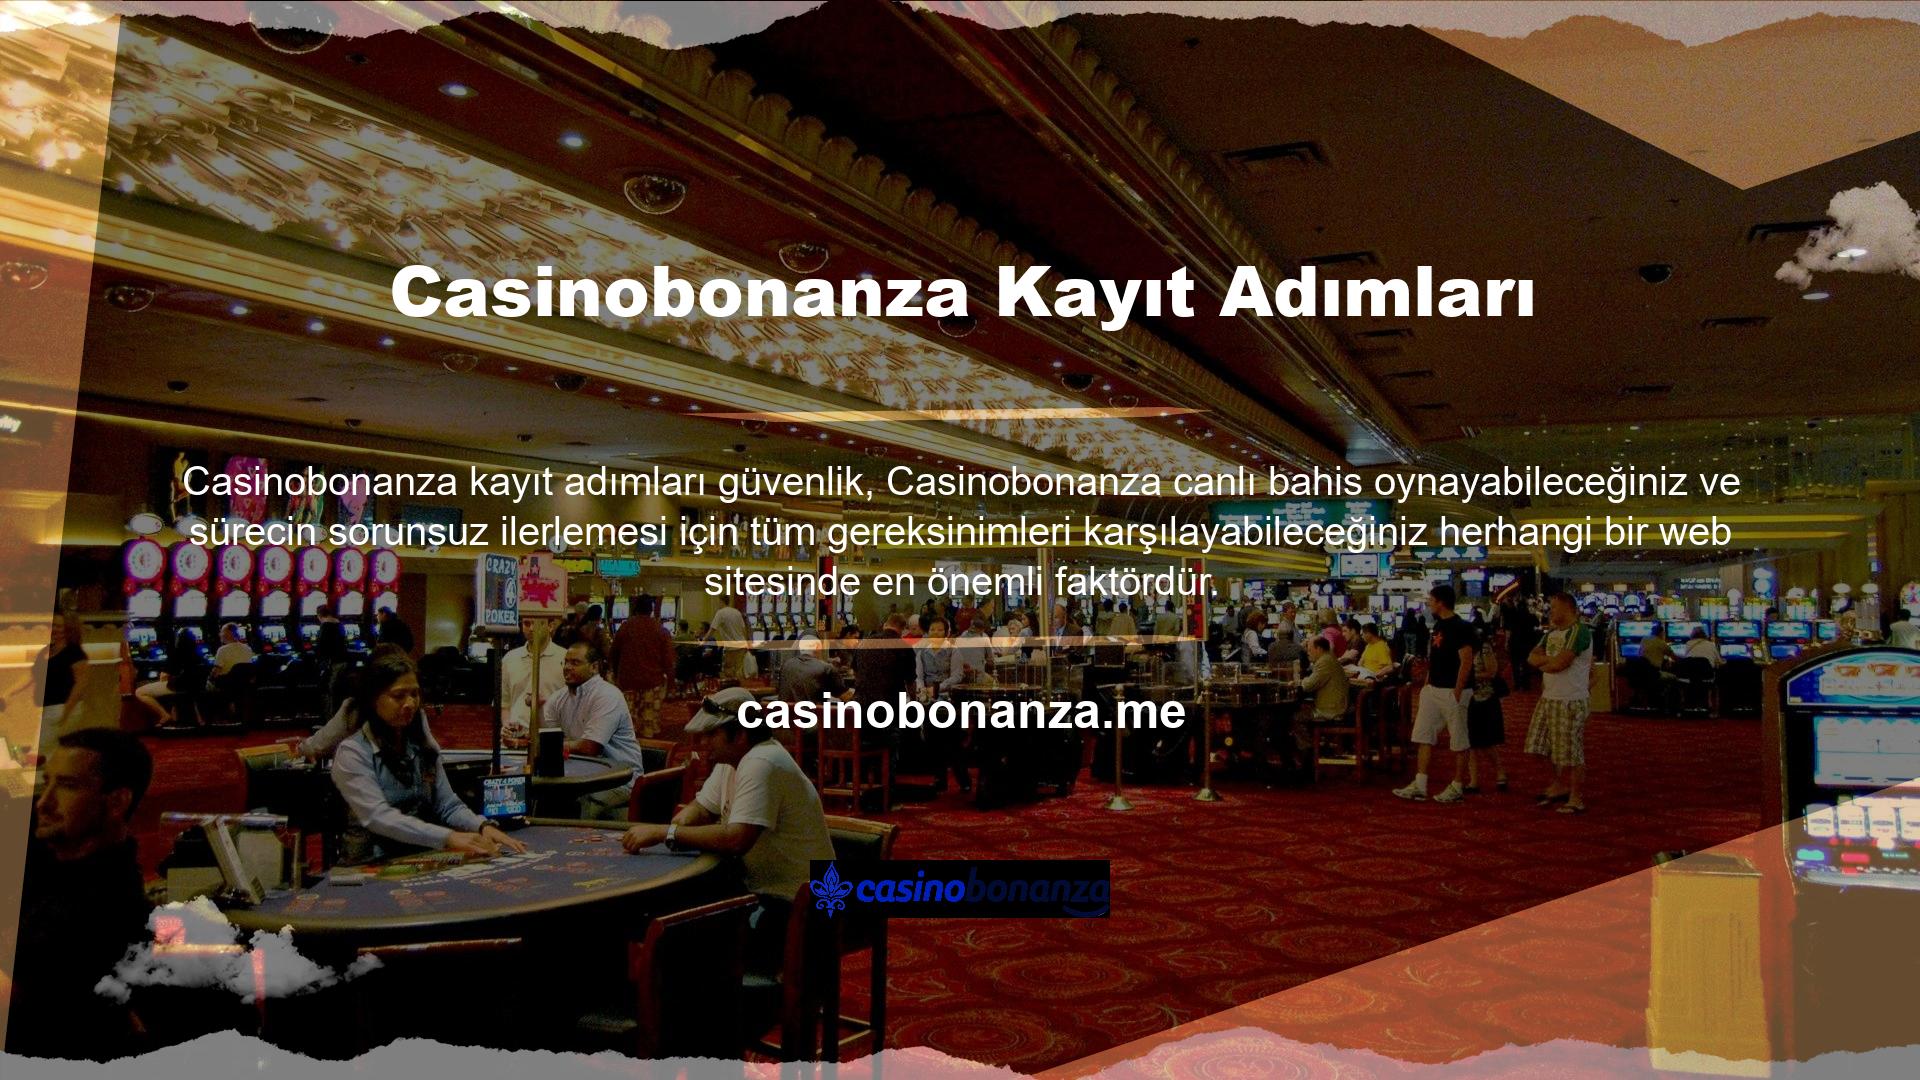 Casinobonanza, kayıt işleminin ardından kullanıma hazır, çok iyi güvenlik ve kullanım hizmetleri yayınladı